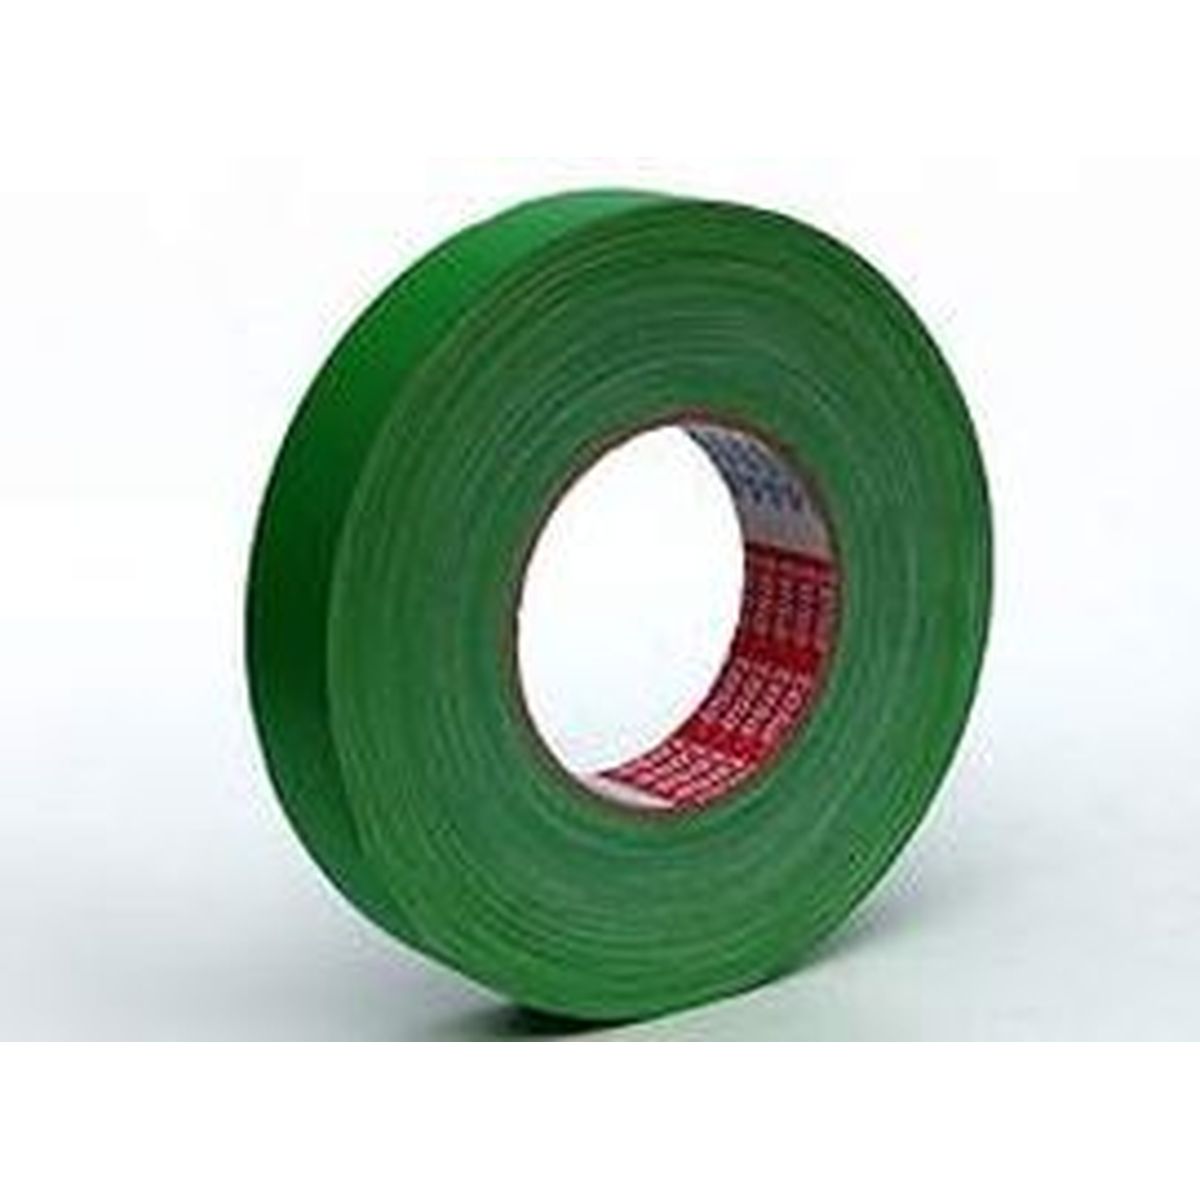 tesa® 4651 Gewebeband Premium 30mm x 50m grün